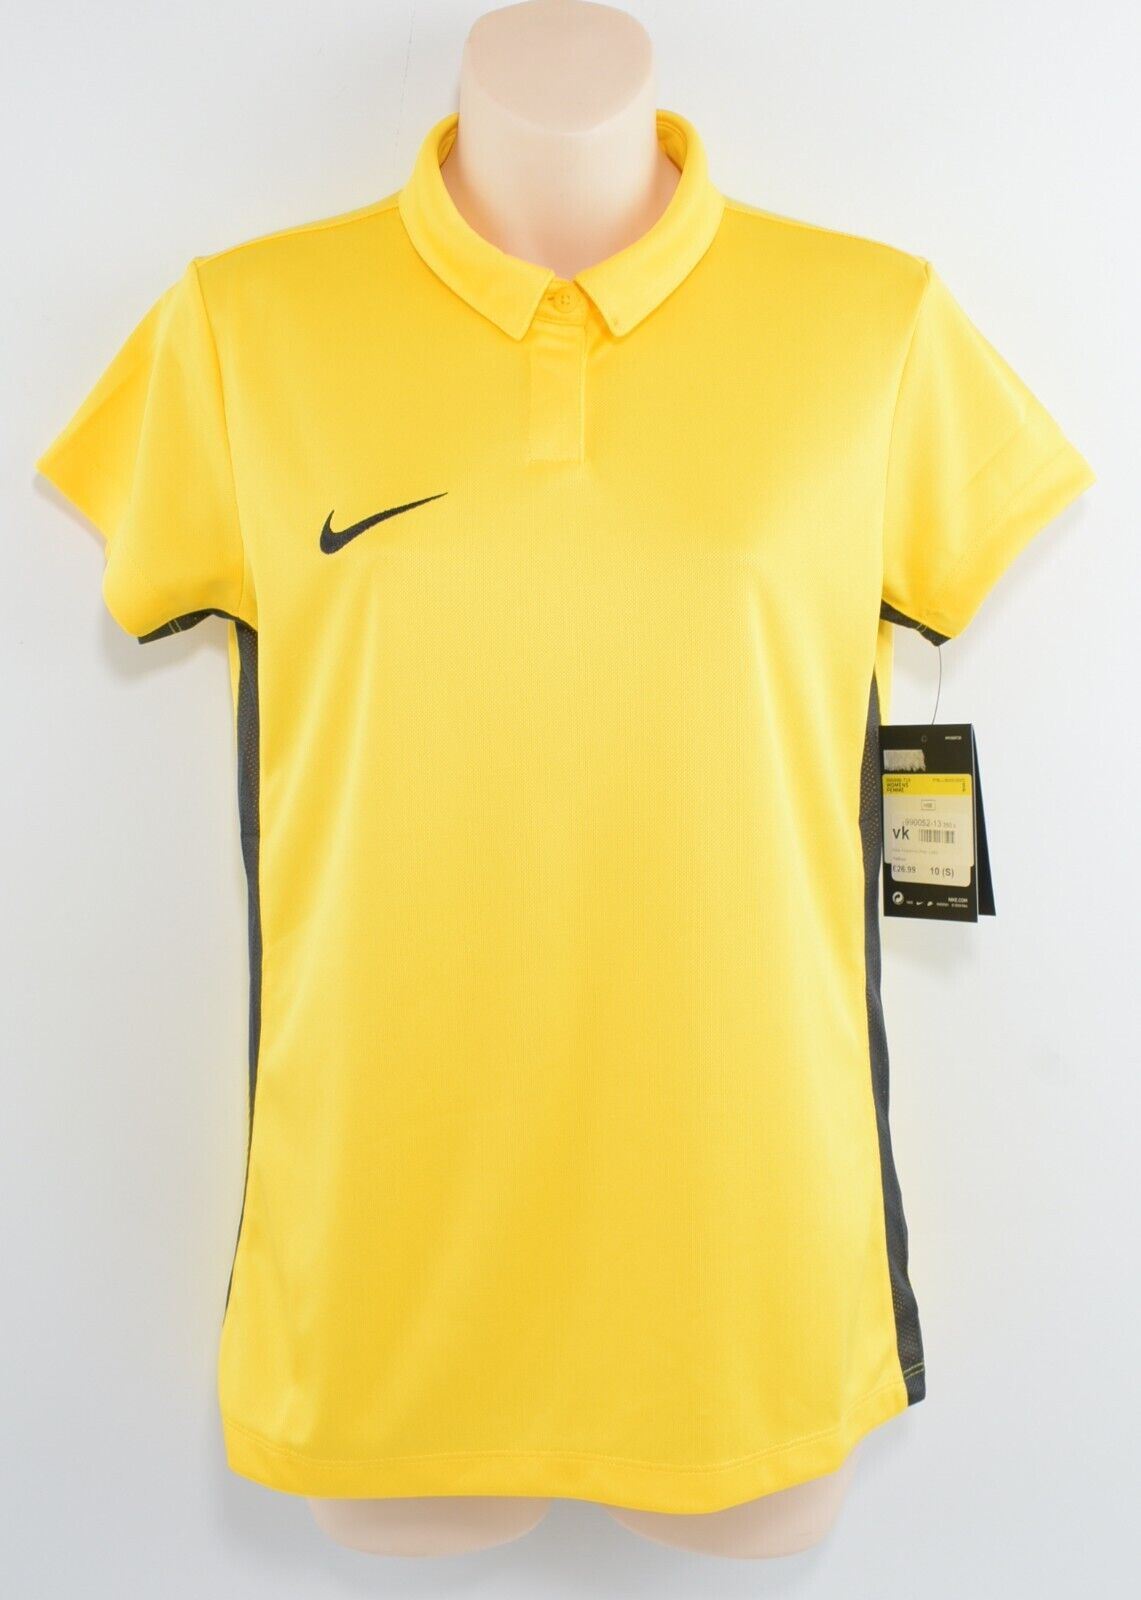 NIKE Dri-Fit Women's ACADEMIC POLO Shirt, T-shirt, Yellow, size S /UK 10